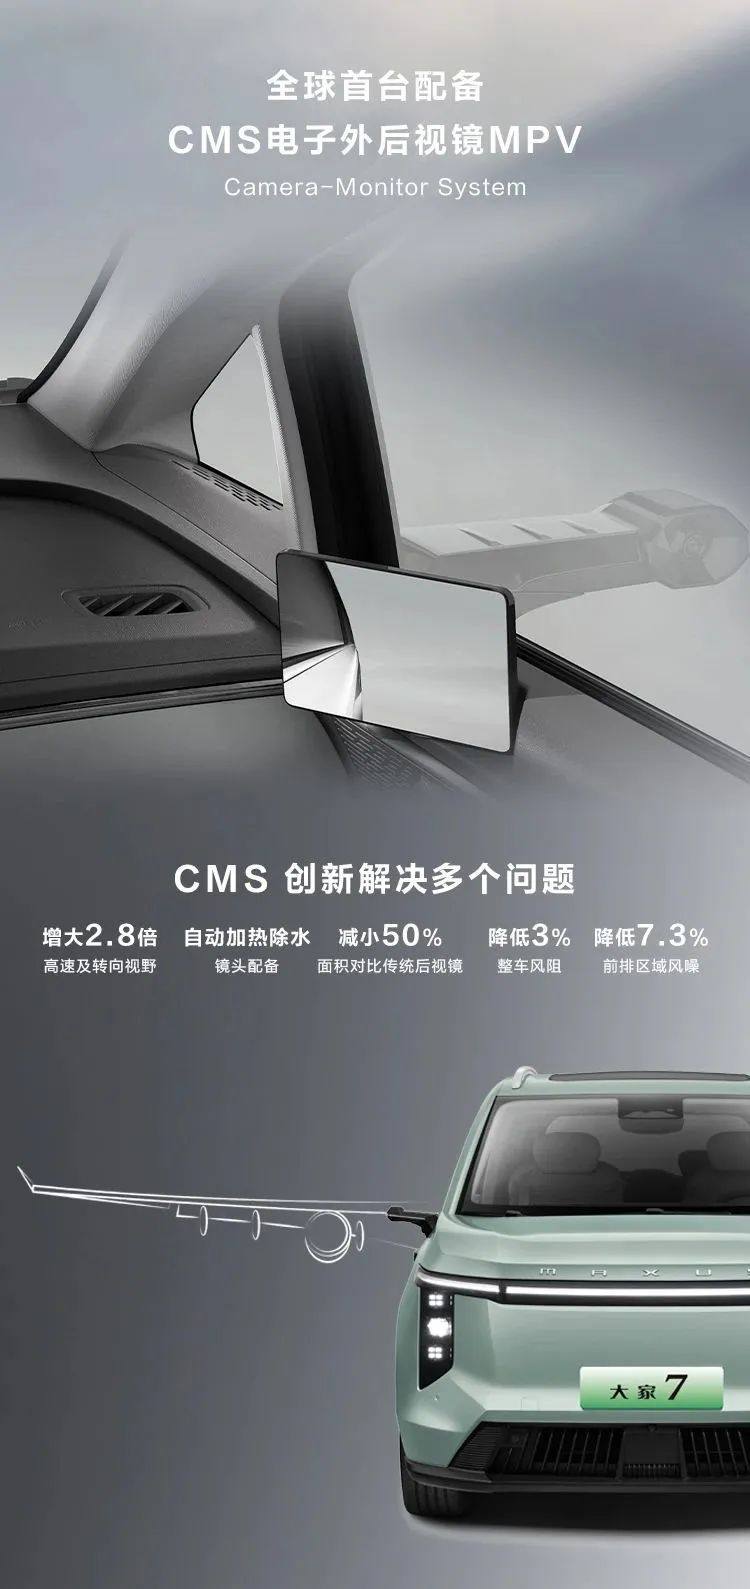 近来新发布的电子外后视镜CMS量产车型及供应商